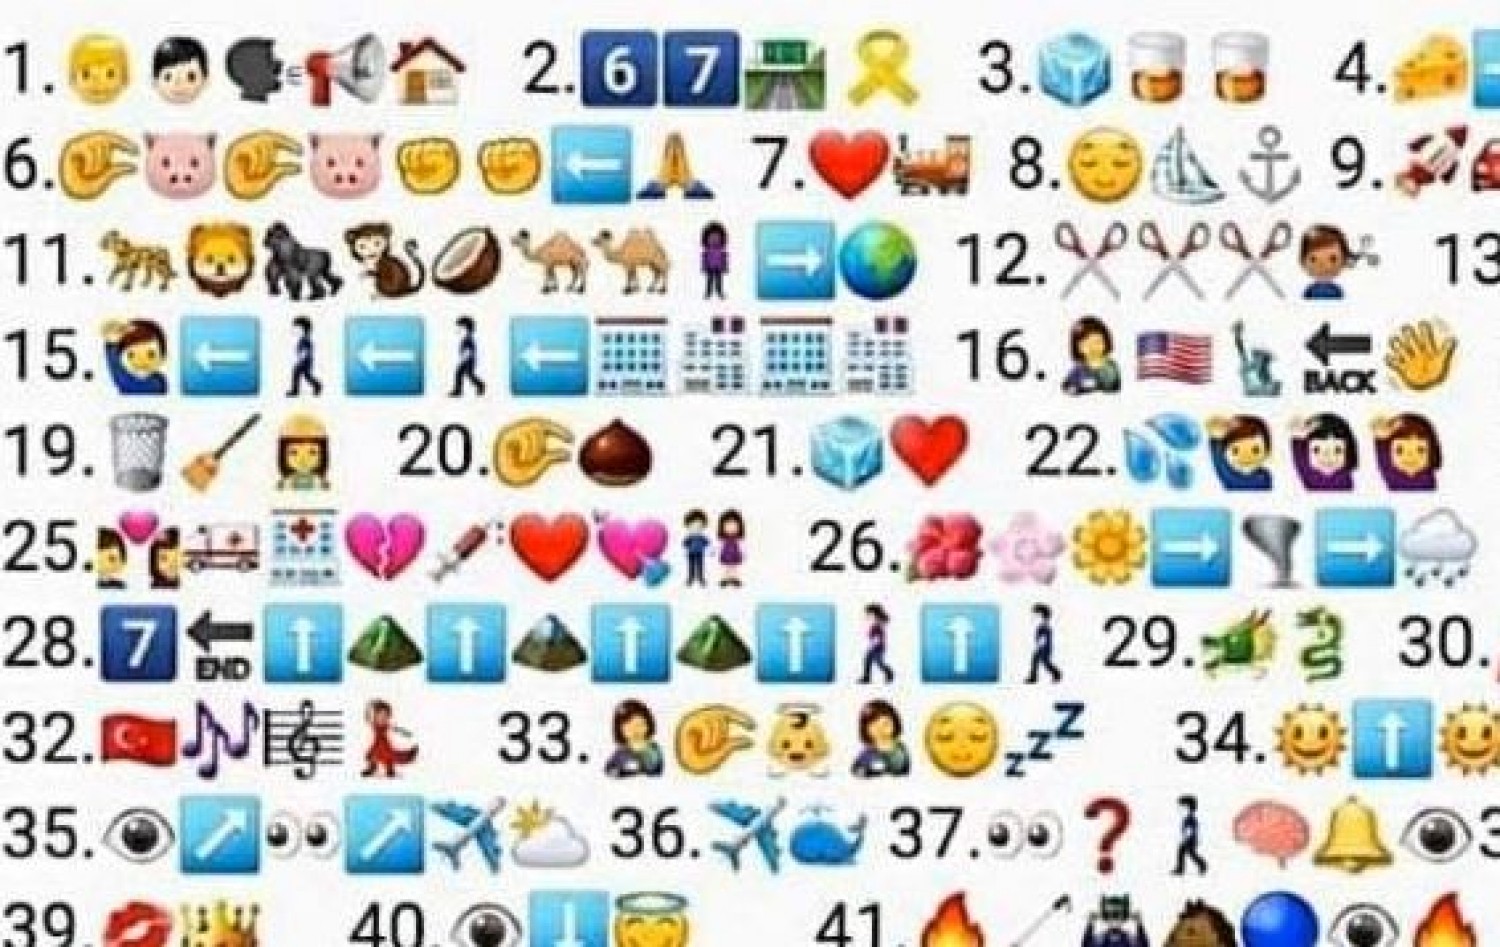 50 magyar sláger címét rejtik az emojik - Hányat tudsz belőle megfejteni?